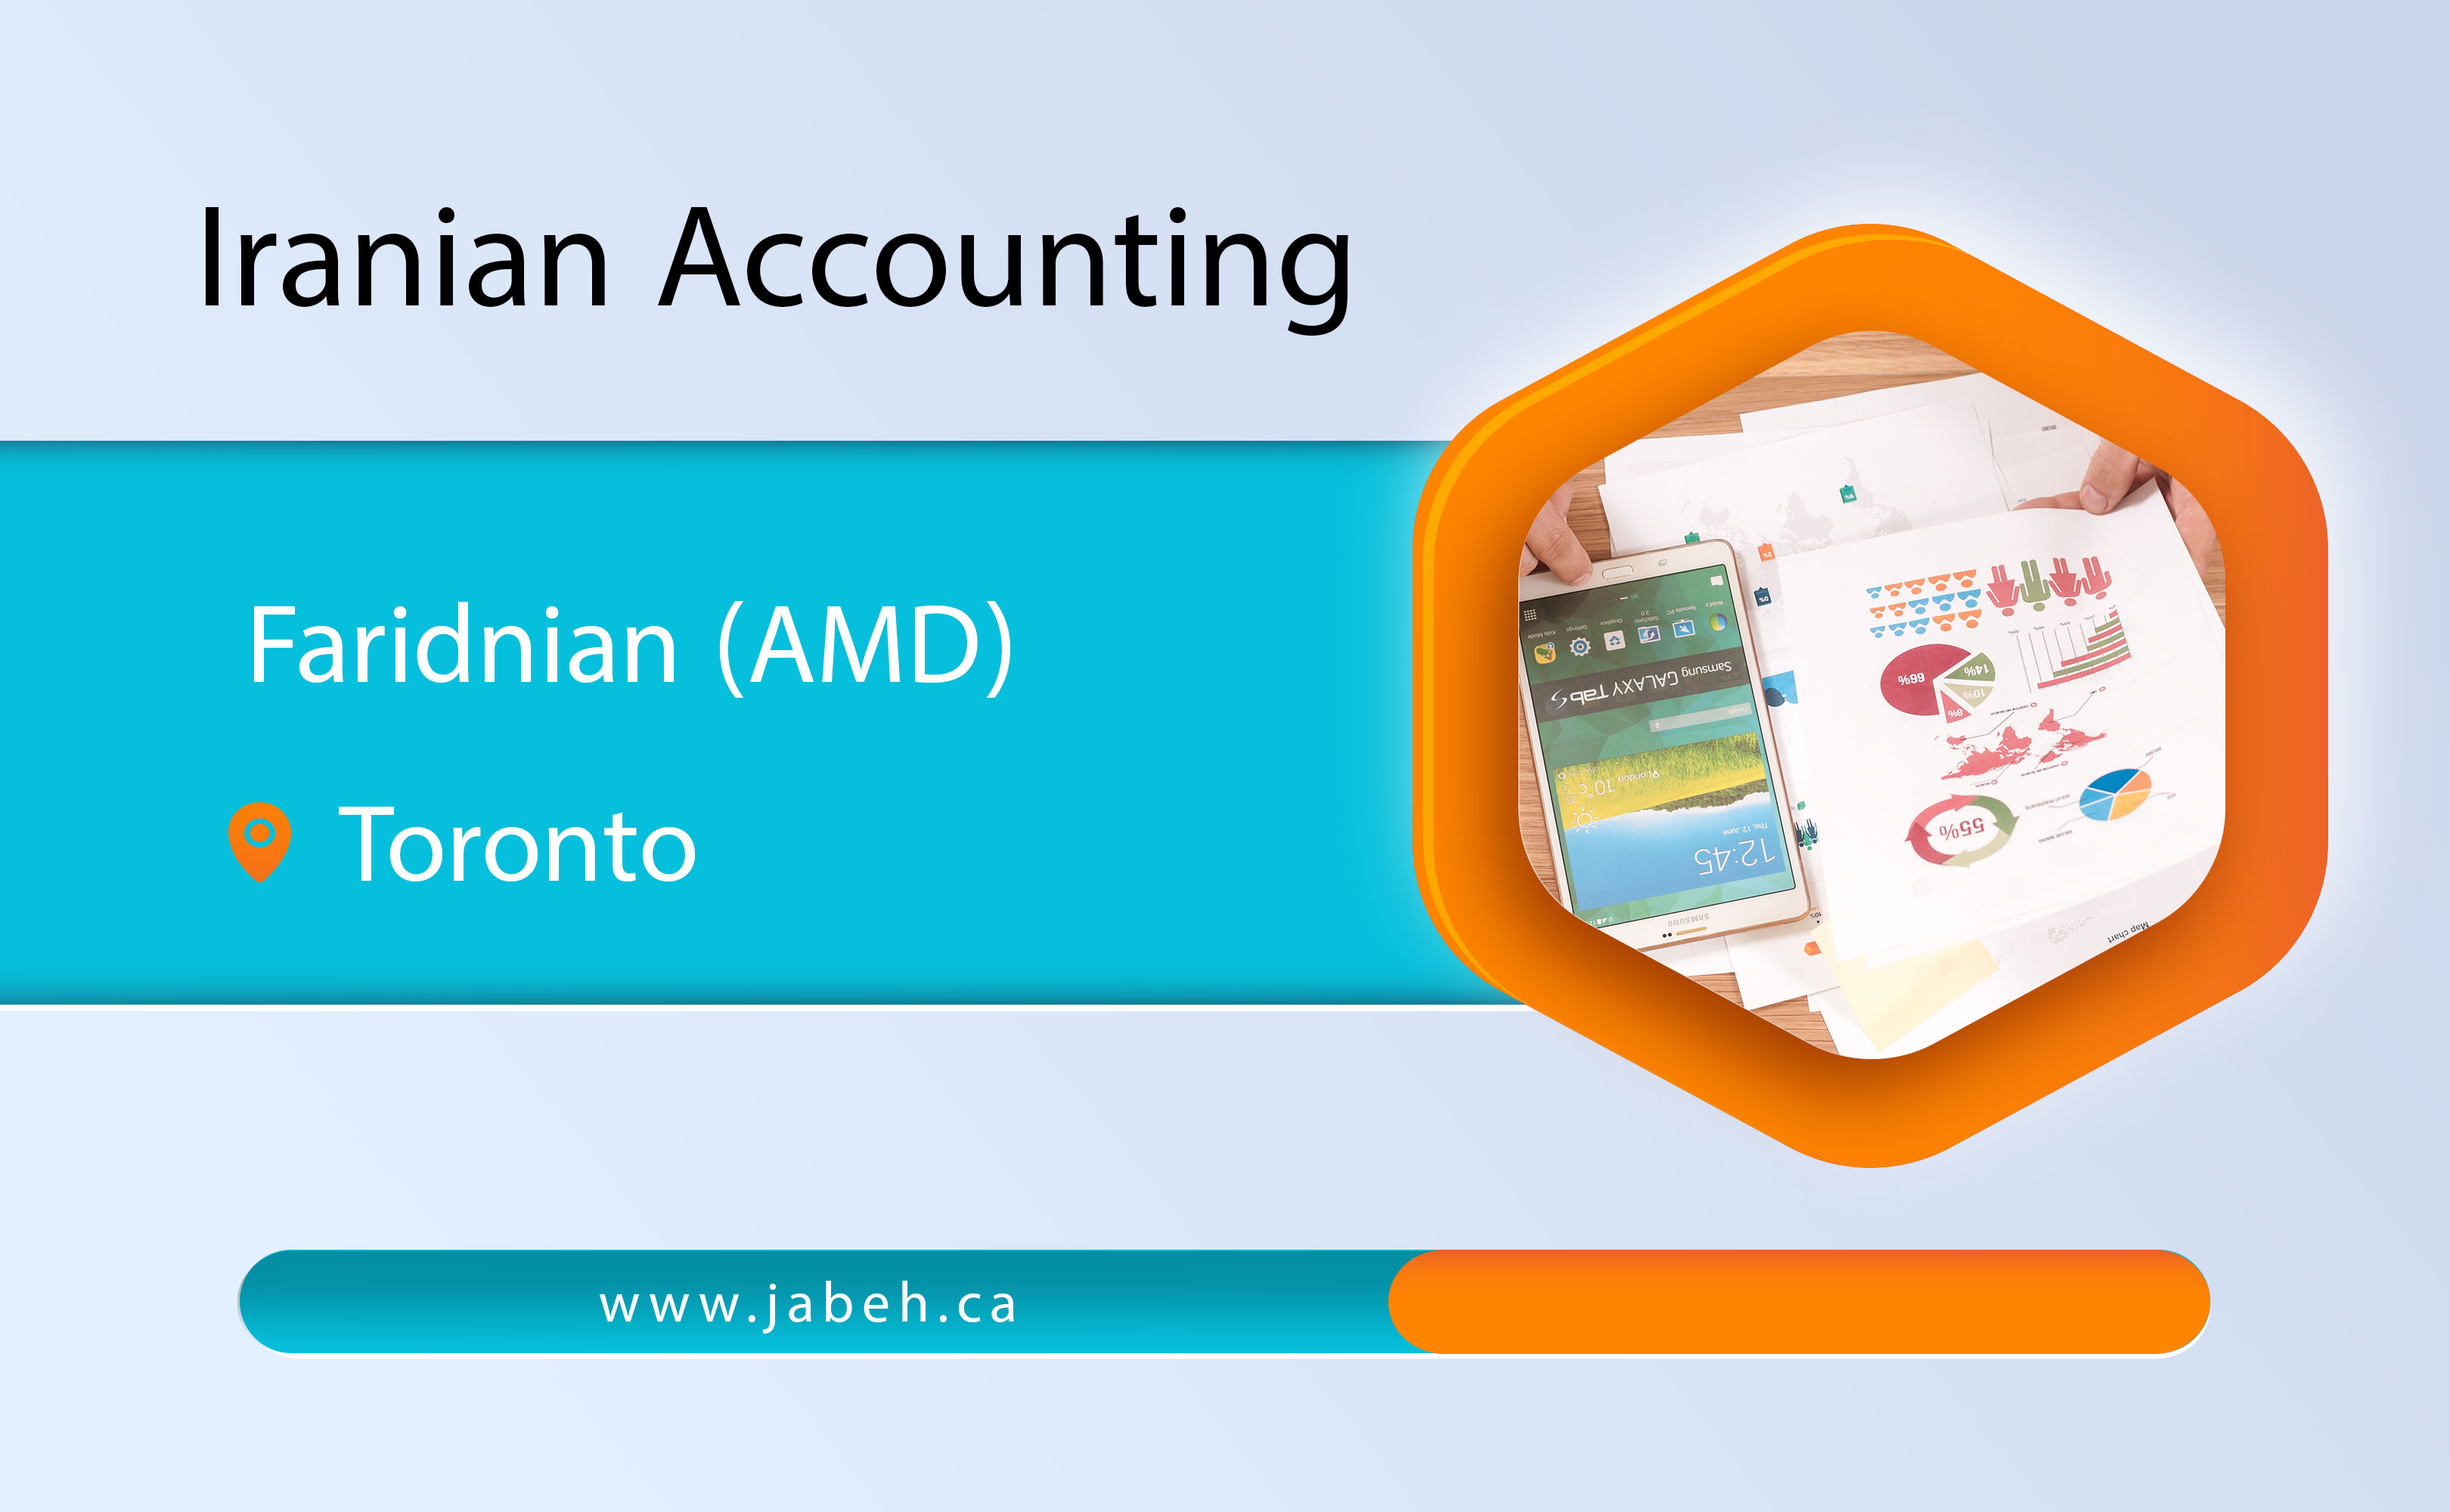 Iranian Faridnian Accounting Company (AMD) in Toronto